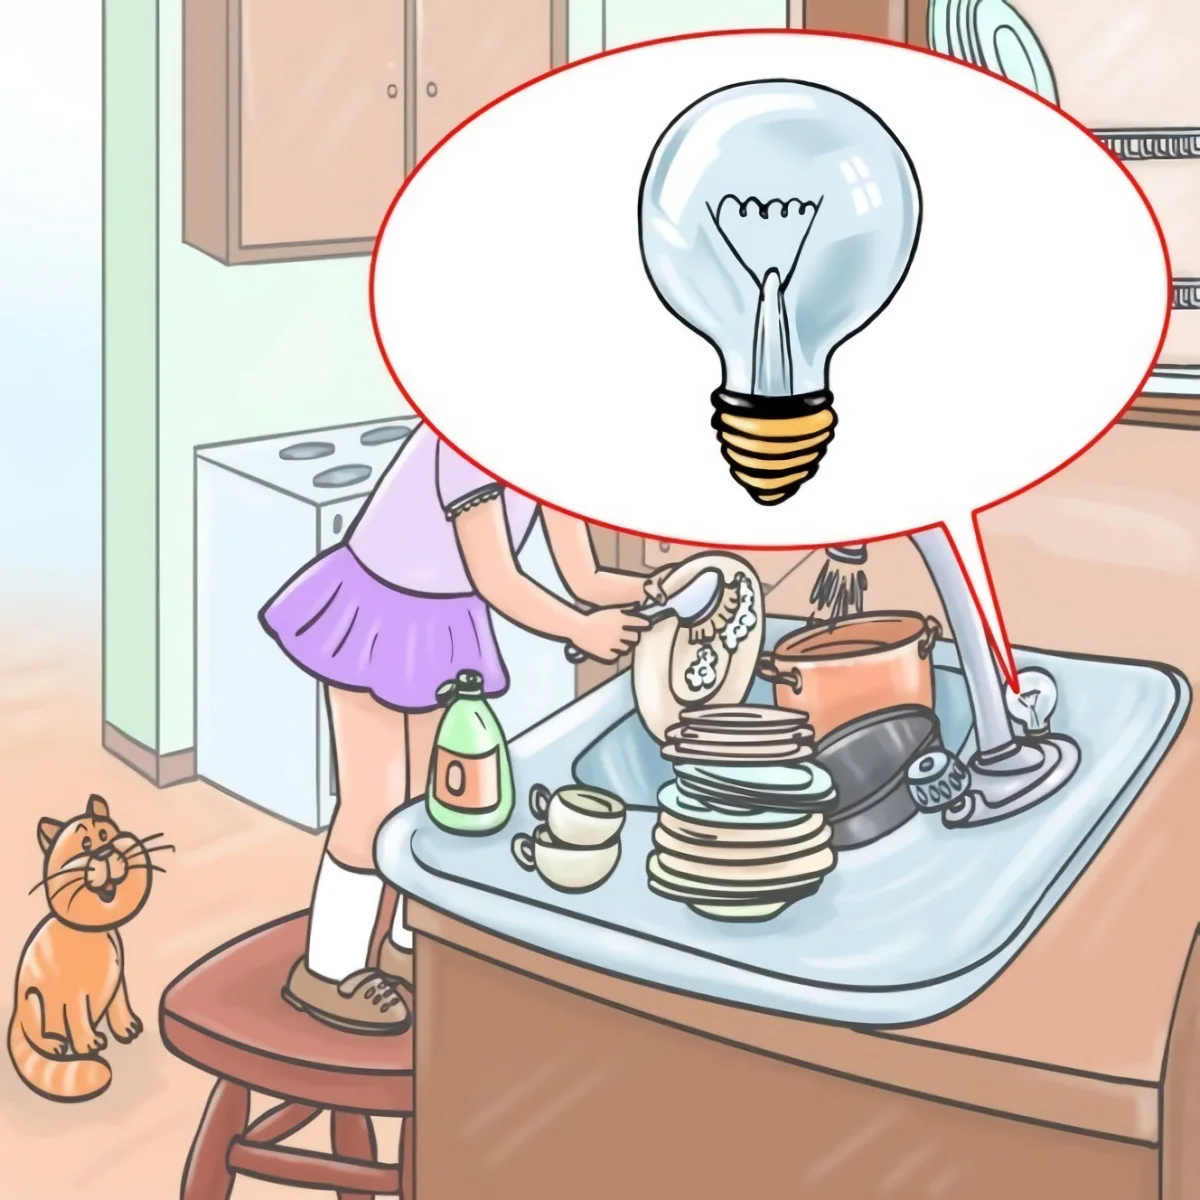 casse tete erreur image ampoule electrique evier chat cuisine